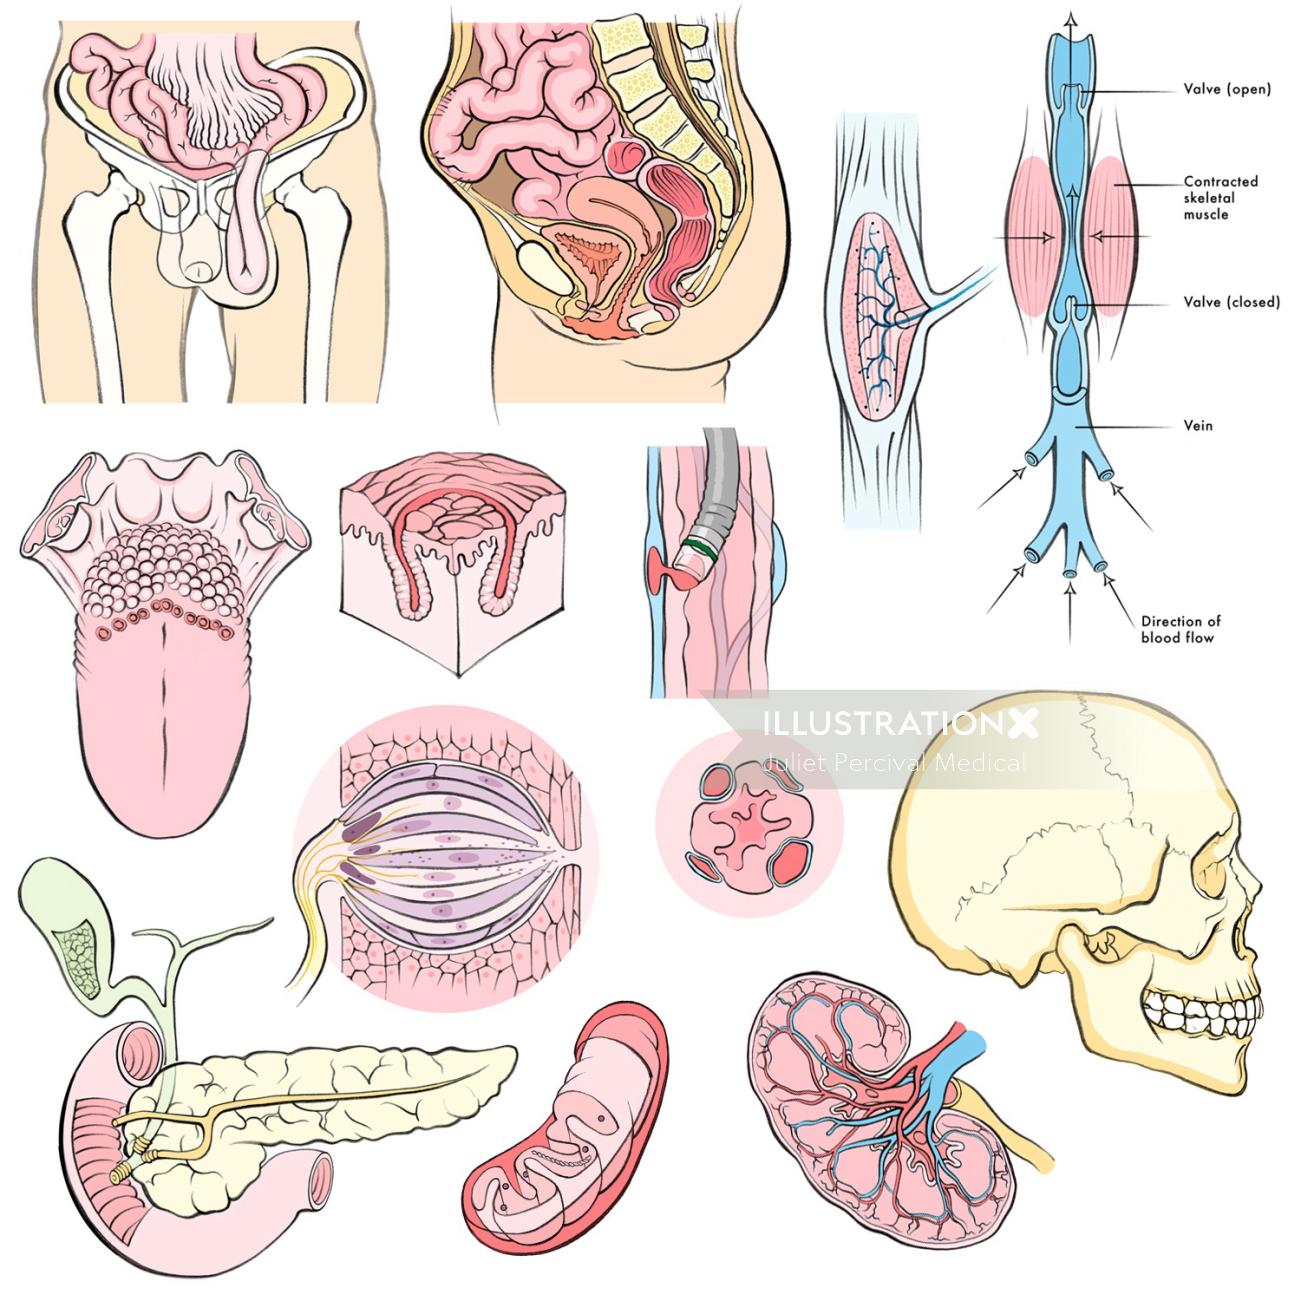 人体解剖学、頭蓋骨、腎臓、舌、膵臓、腸、ミトコンドリア